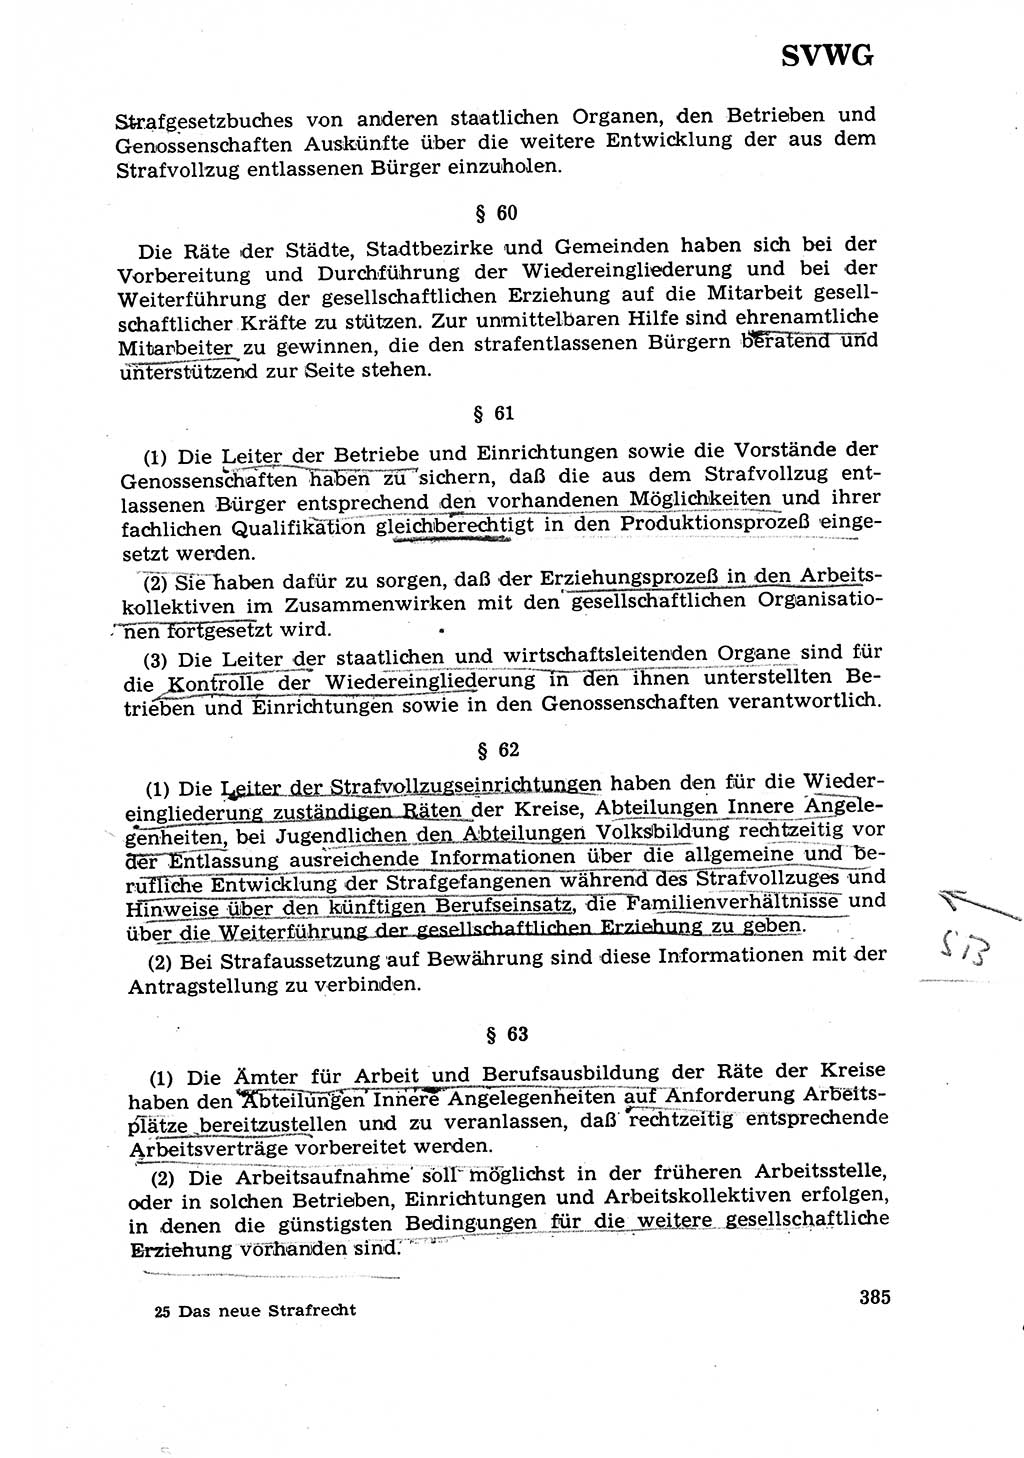 Strafrecht [Deutsche Demokratische Republik (DDR)] 1968, Seite 385 (Strafr. DDR 1968, S. 385)